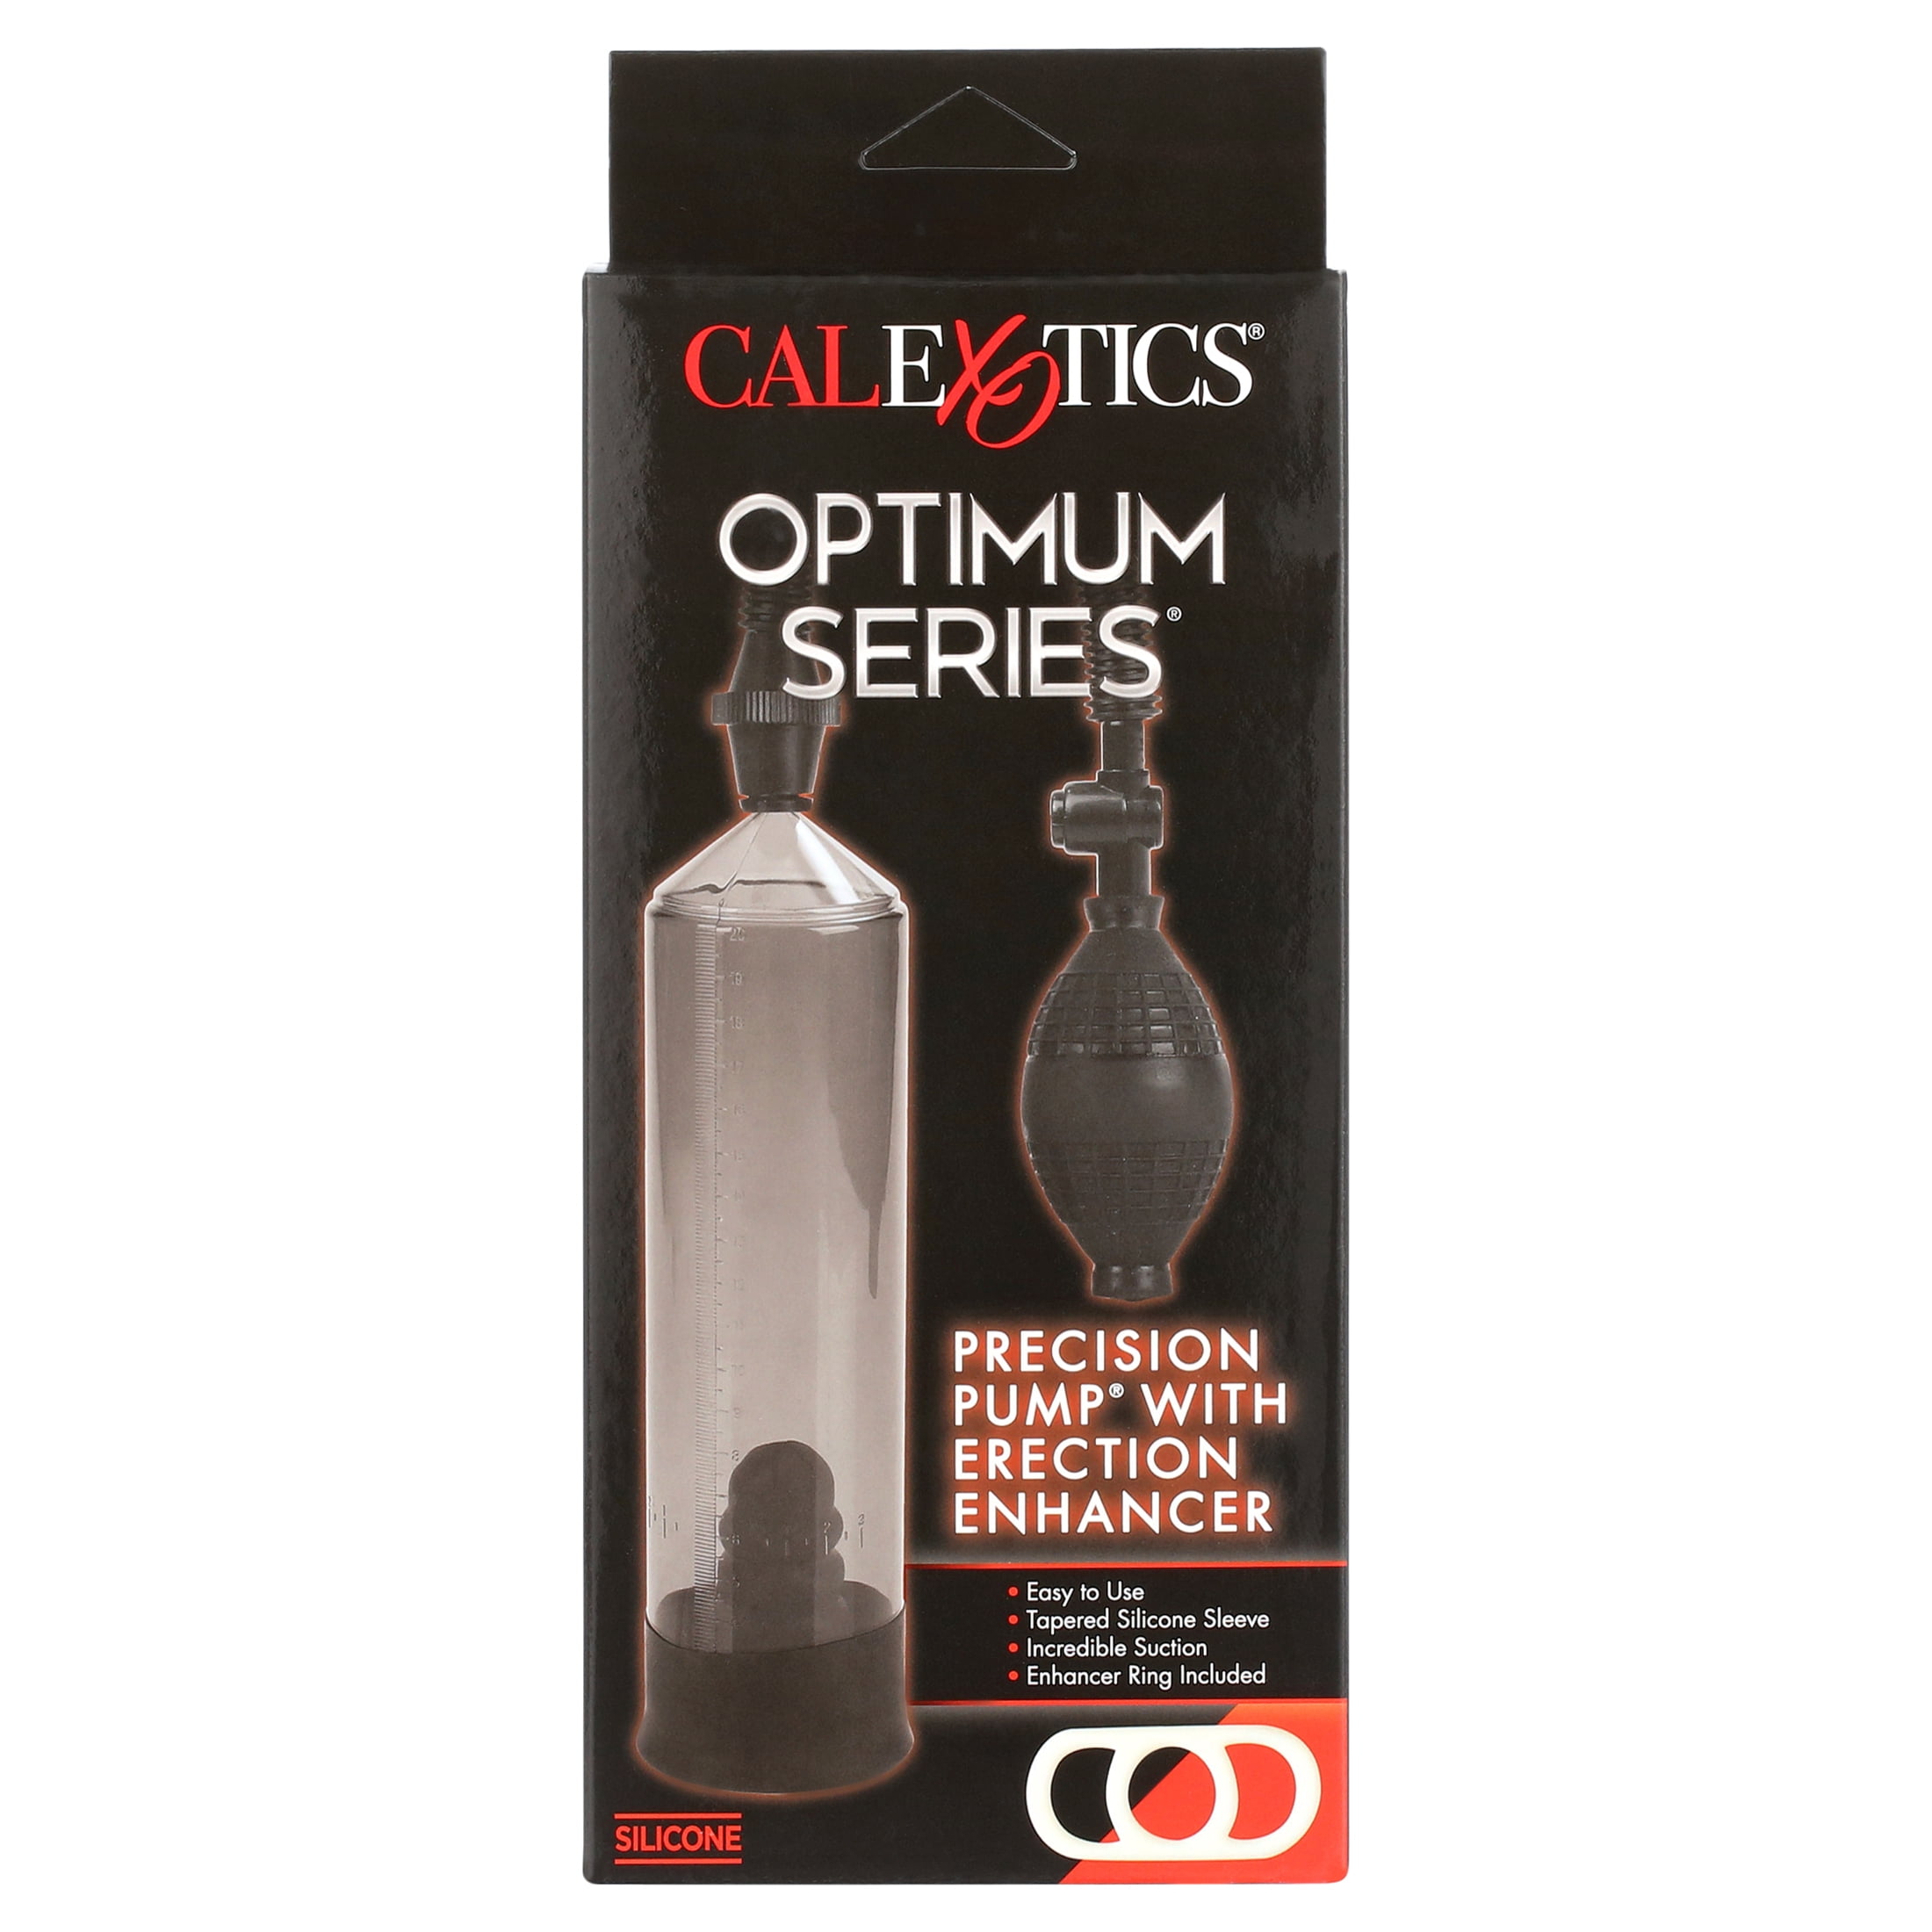 CalExotics Precision Penis Pump With Erection Enhancer